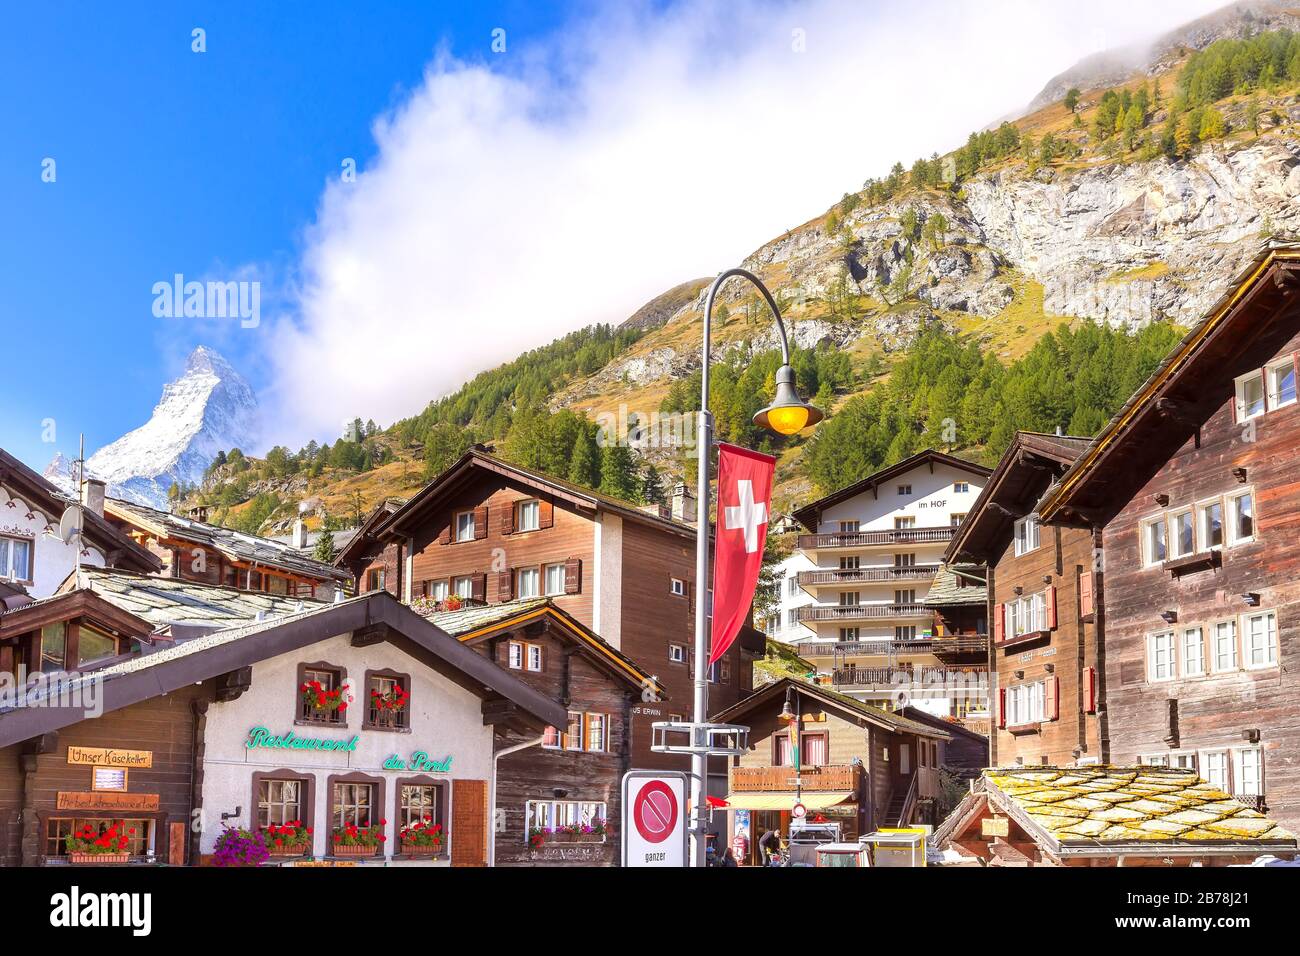 Zermatt, Svizzera - 7 ottobre 2019: Vista sulla strada della città nella famosa località sciistica svizzera, Monte neve Cervino, case tradizionali Foto Stock